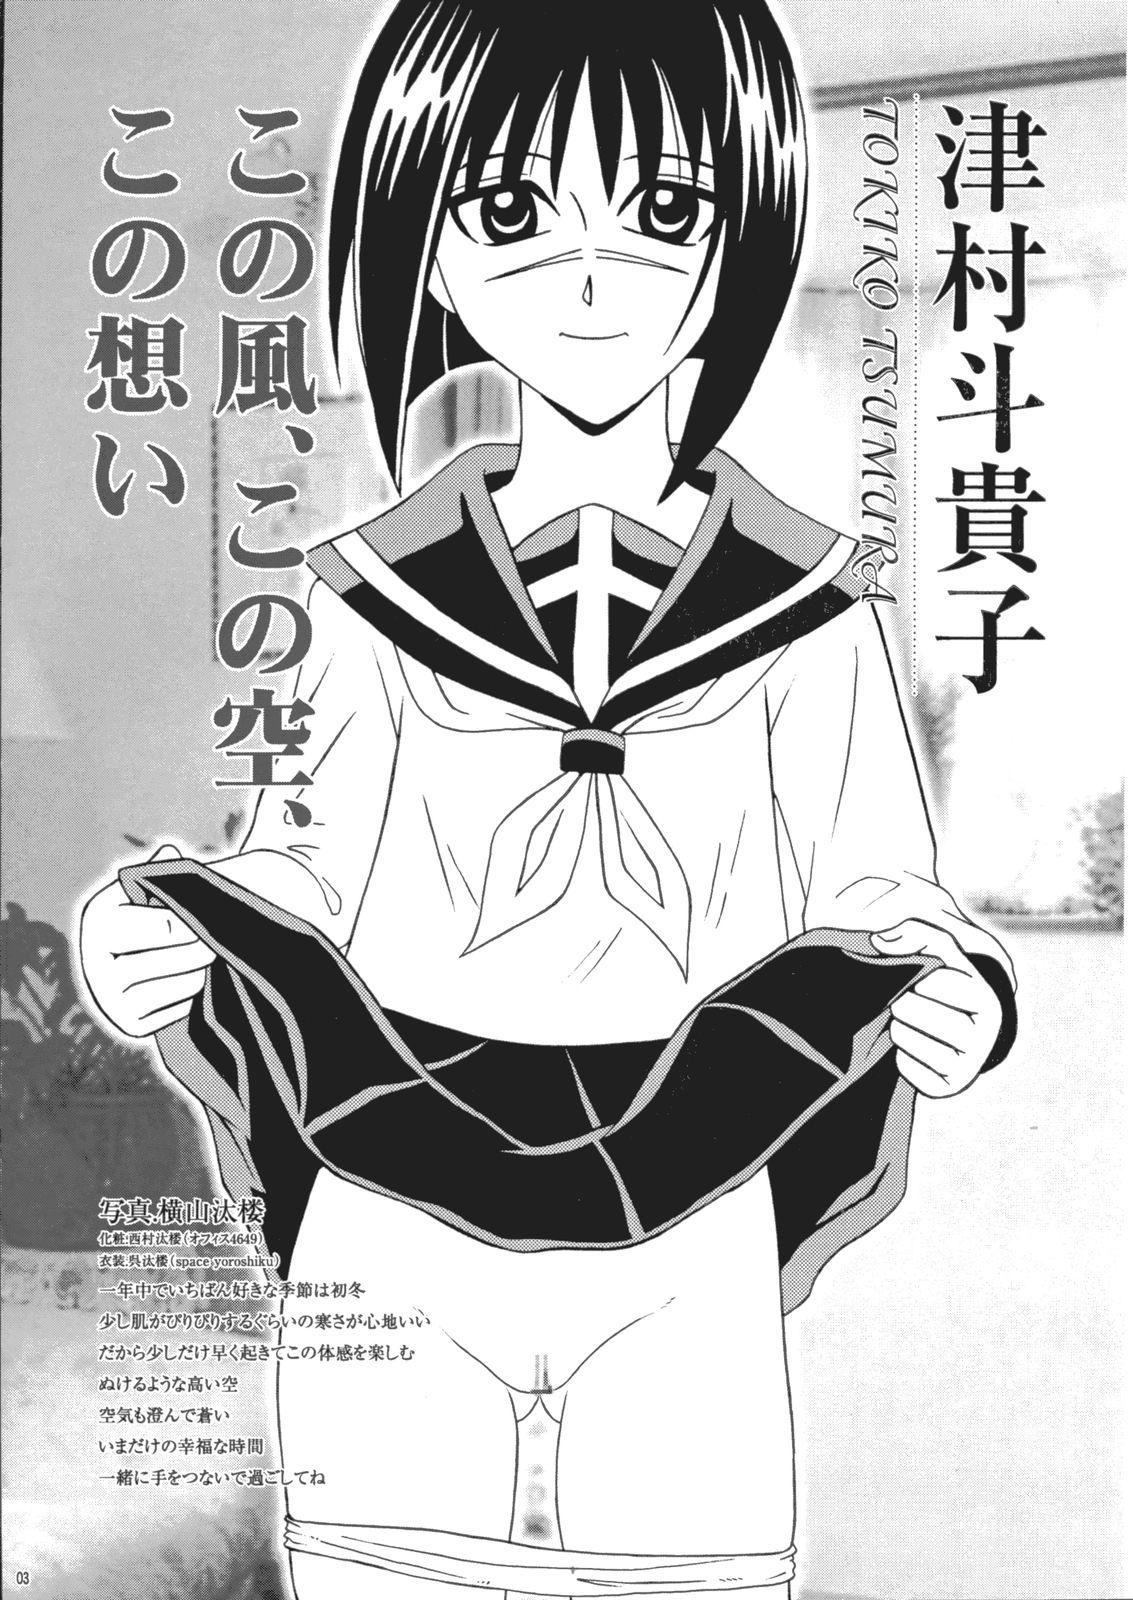 Petite Porn Saku-chan Kurabu Vol.03 - Naruto One piece Ichigo 100 Is Hikaru no go Goth - Page 2